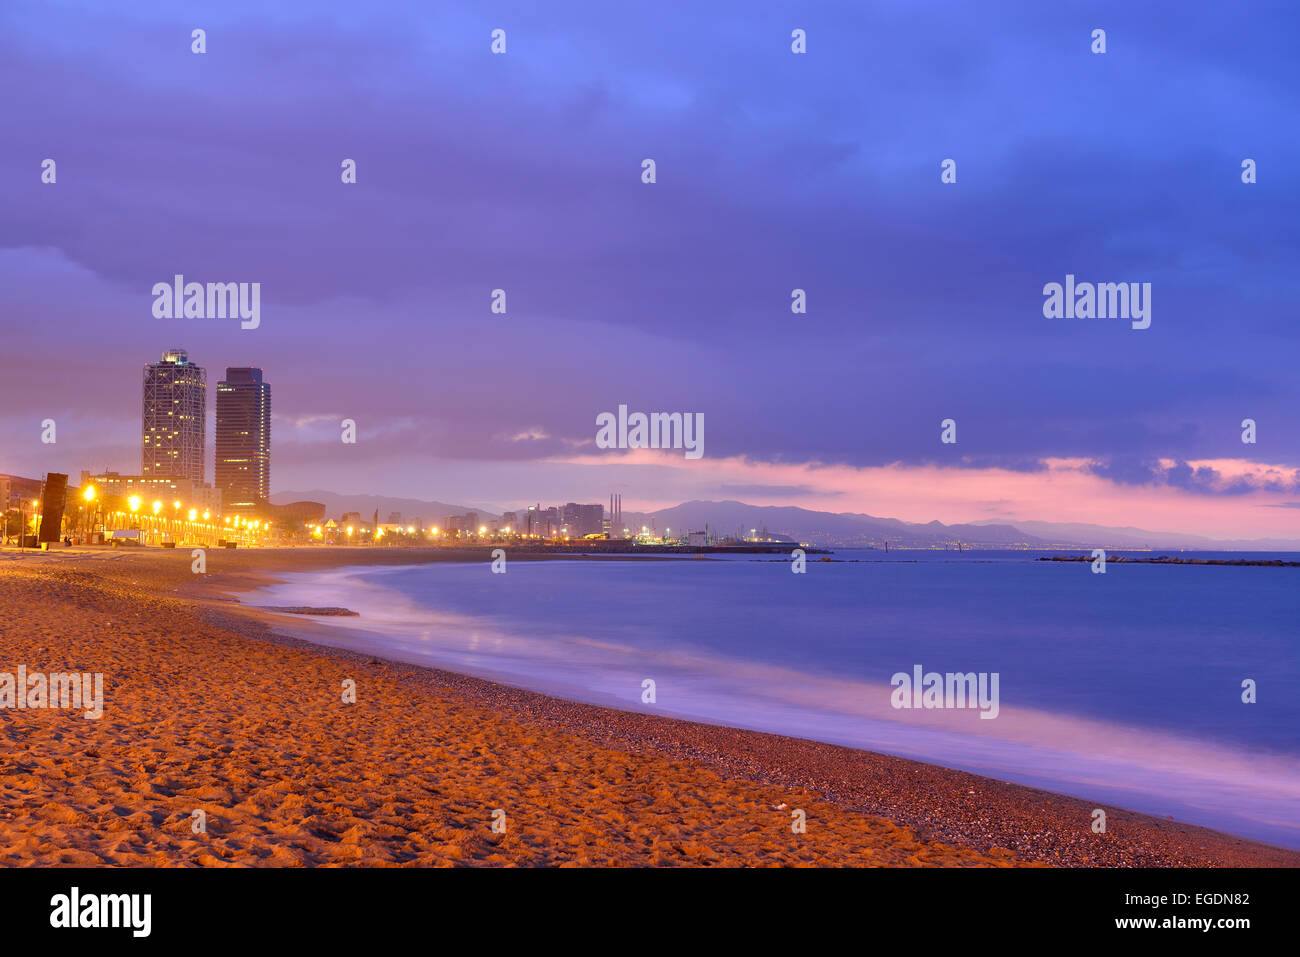 Twin towers Hotel Arts und Mapfre Tower am Strand, beleuchtet bei Nacht, Olympisches Dorf, Barceloneta, Barcelona, Katalonien, Spanien Stockfoto